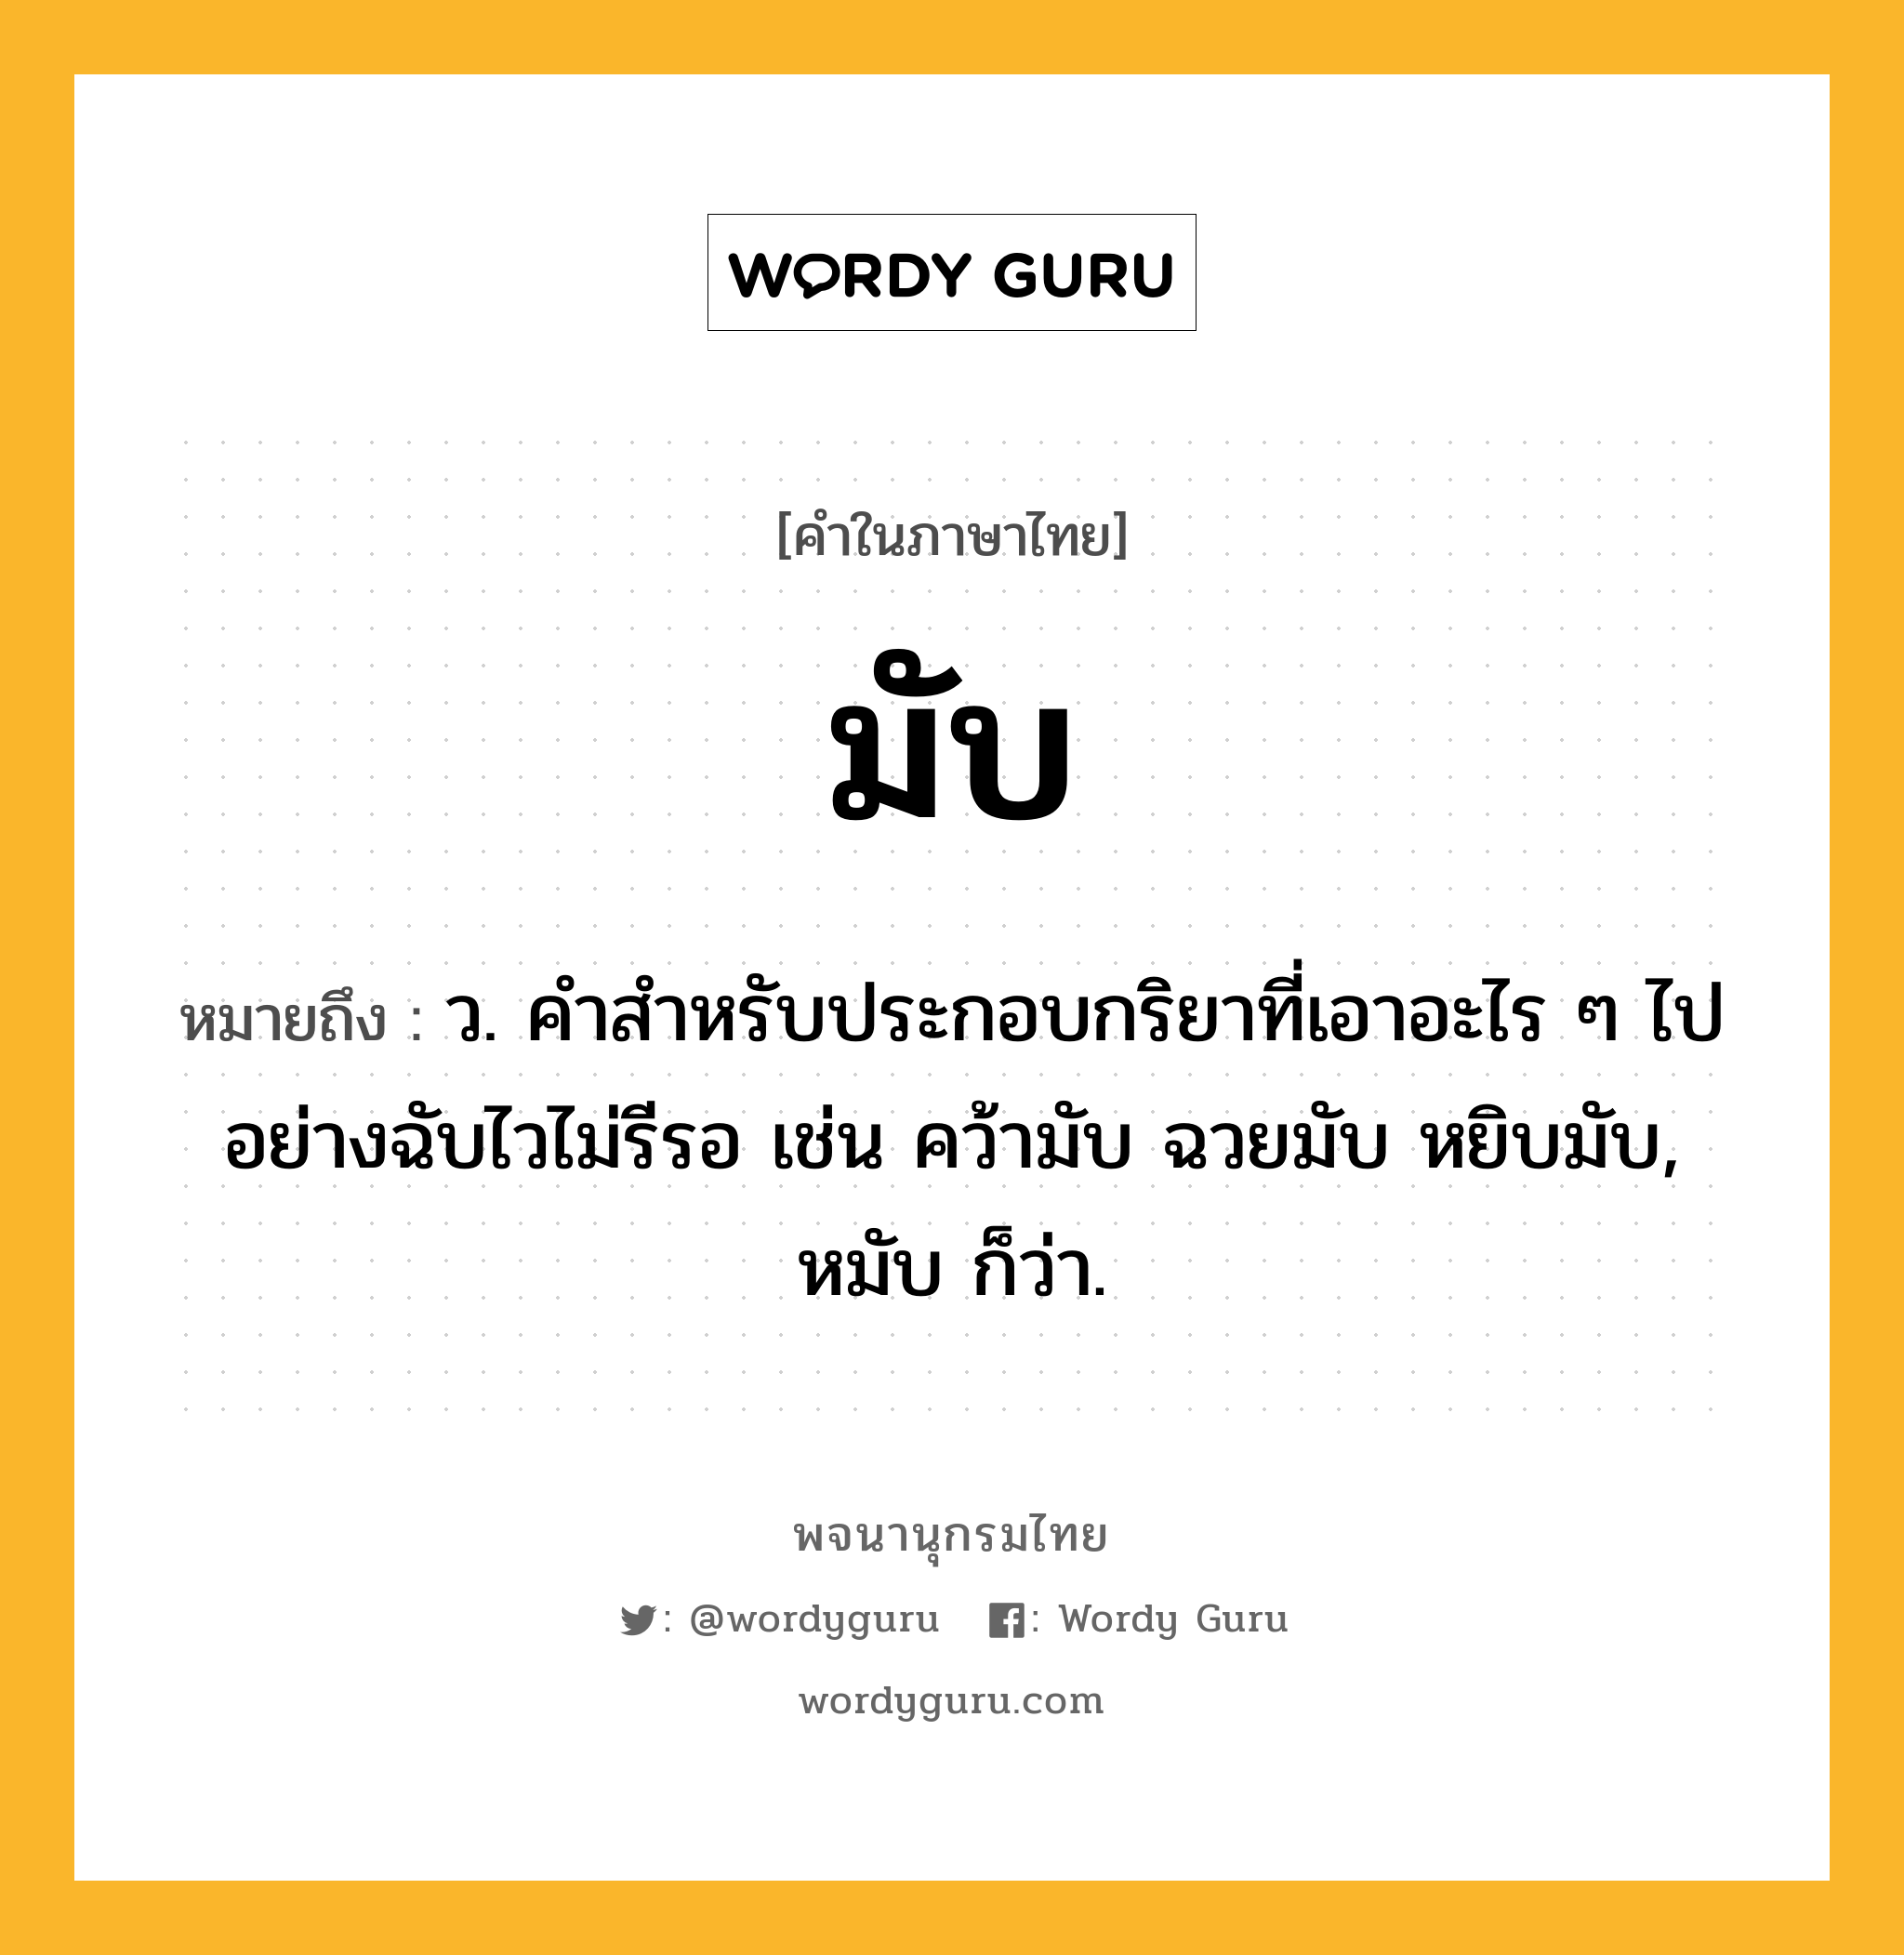 มับ ความหมาย หมายถึงอะไร?, คำในภาษาไทย มับ หมายถึง ว. คําสําหรับประกอบกริยาที่เอาอะไร ๆ ไปอย่างฉับไวไม่รีรอ เช่น คว้ามับ ฉวยมับ หยิบมับ, หมับ ก็ว่า.